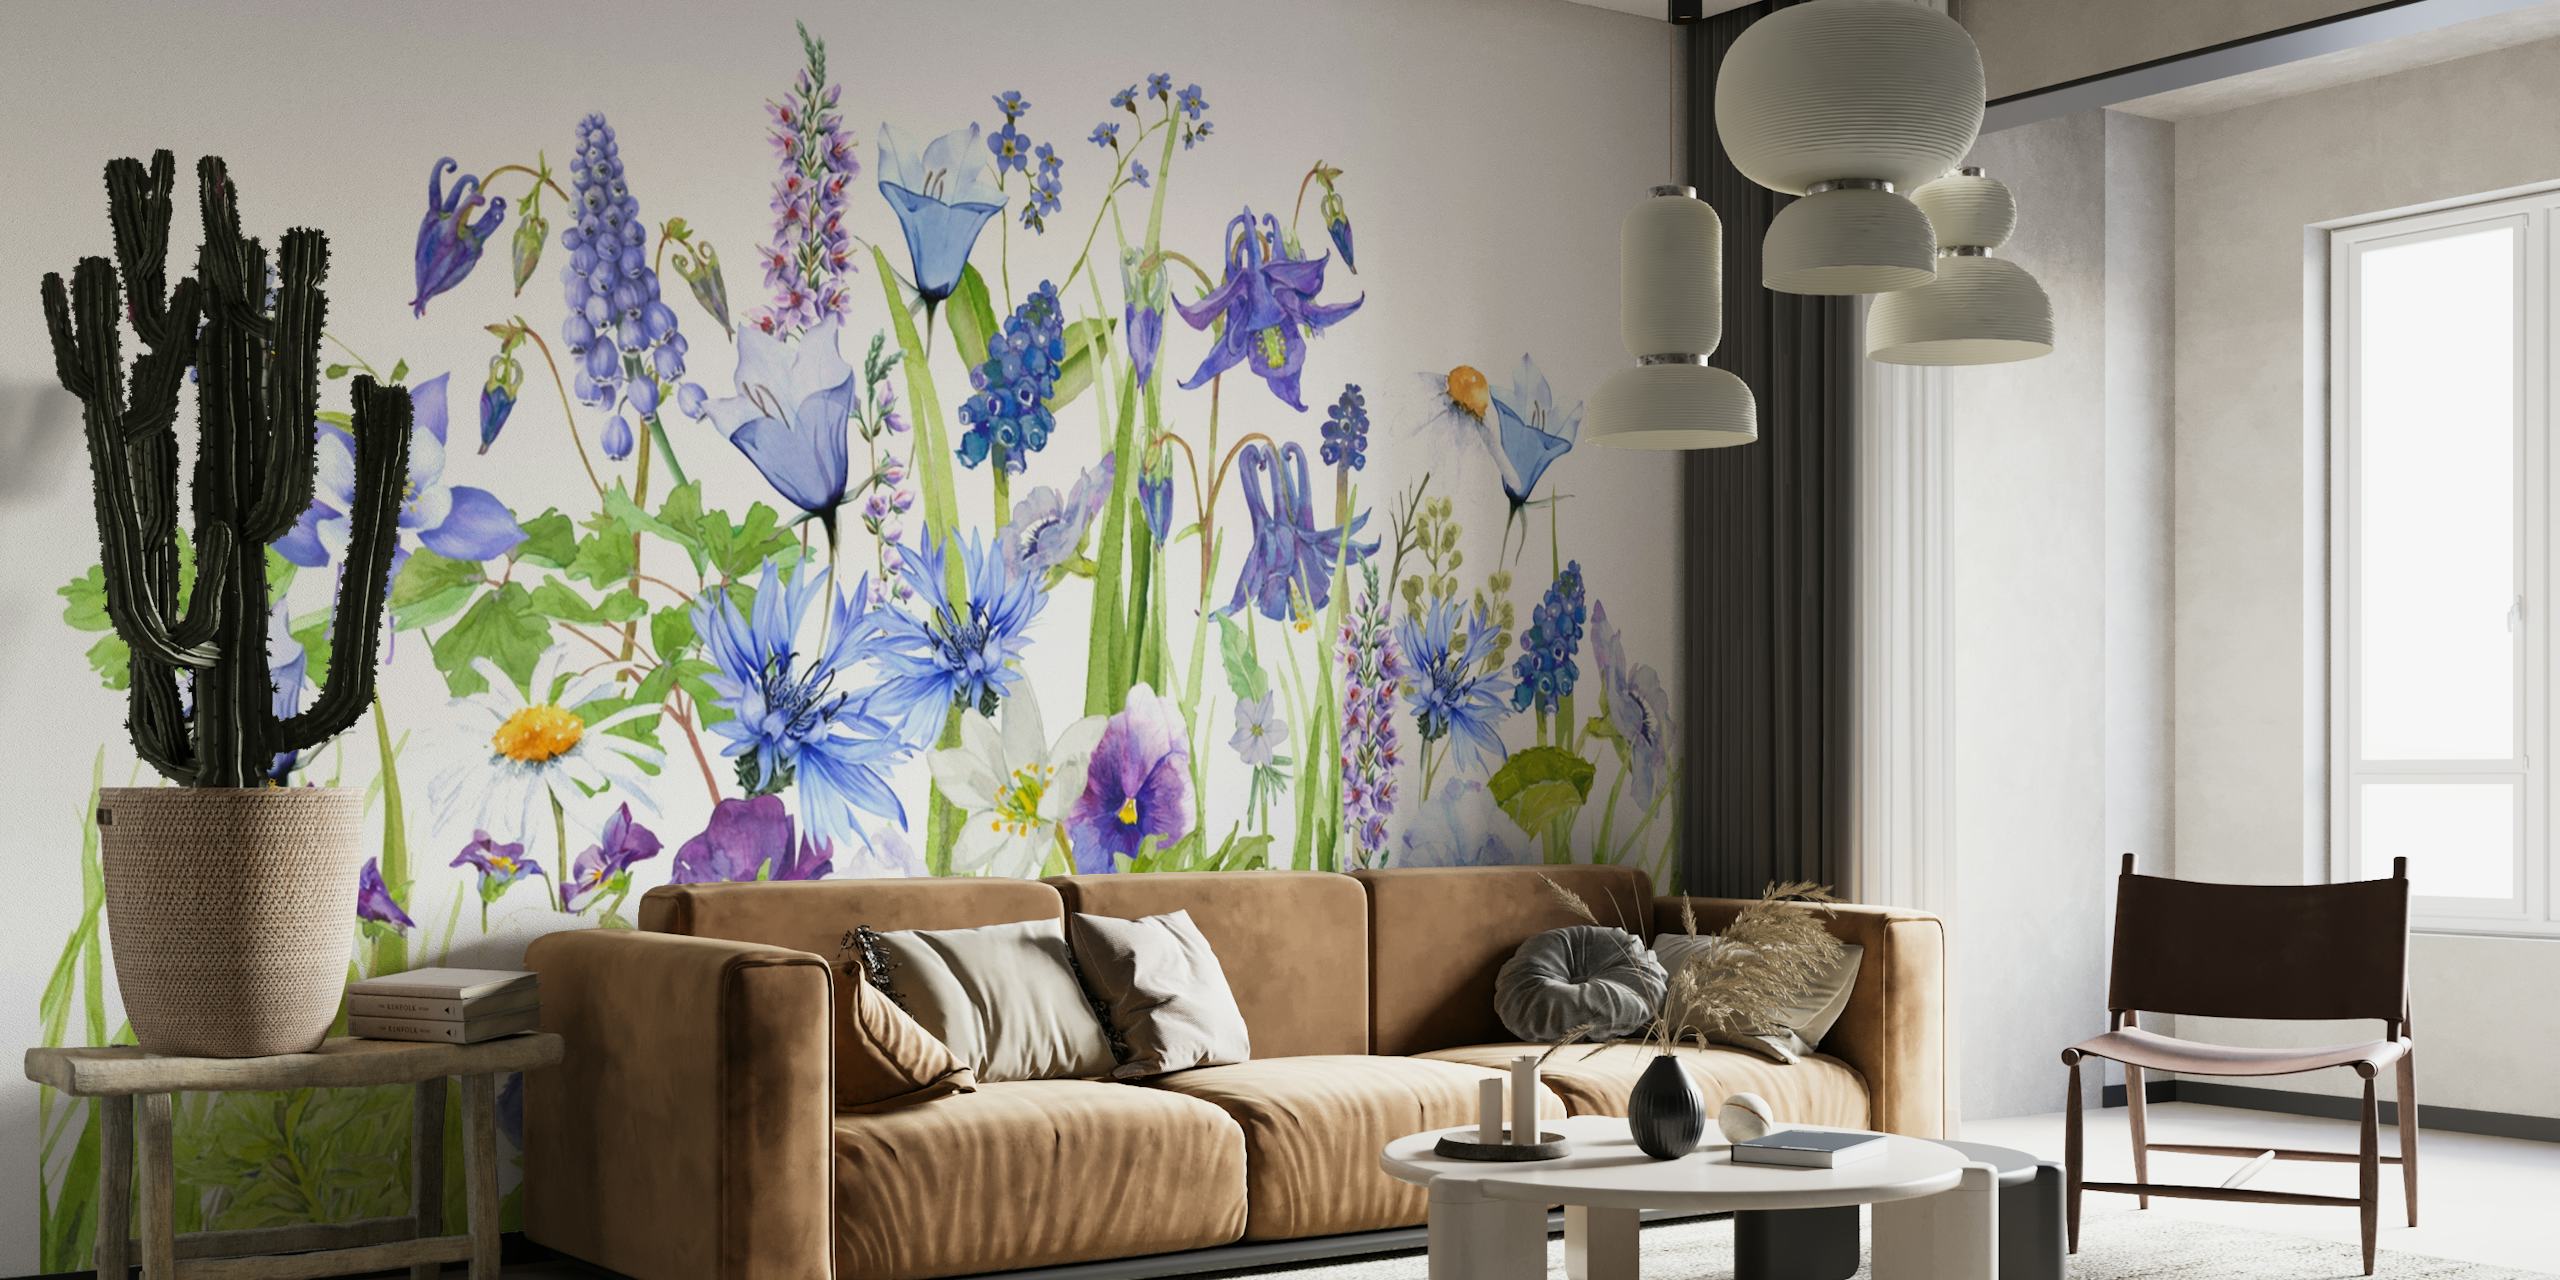 Zidni mural koji prikazuje raznoliko poljsko cvijeće u nijansama plave i zelene, stvarajući impresivan prizor ljetne livade.